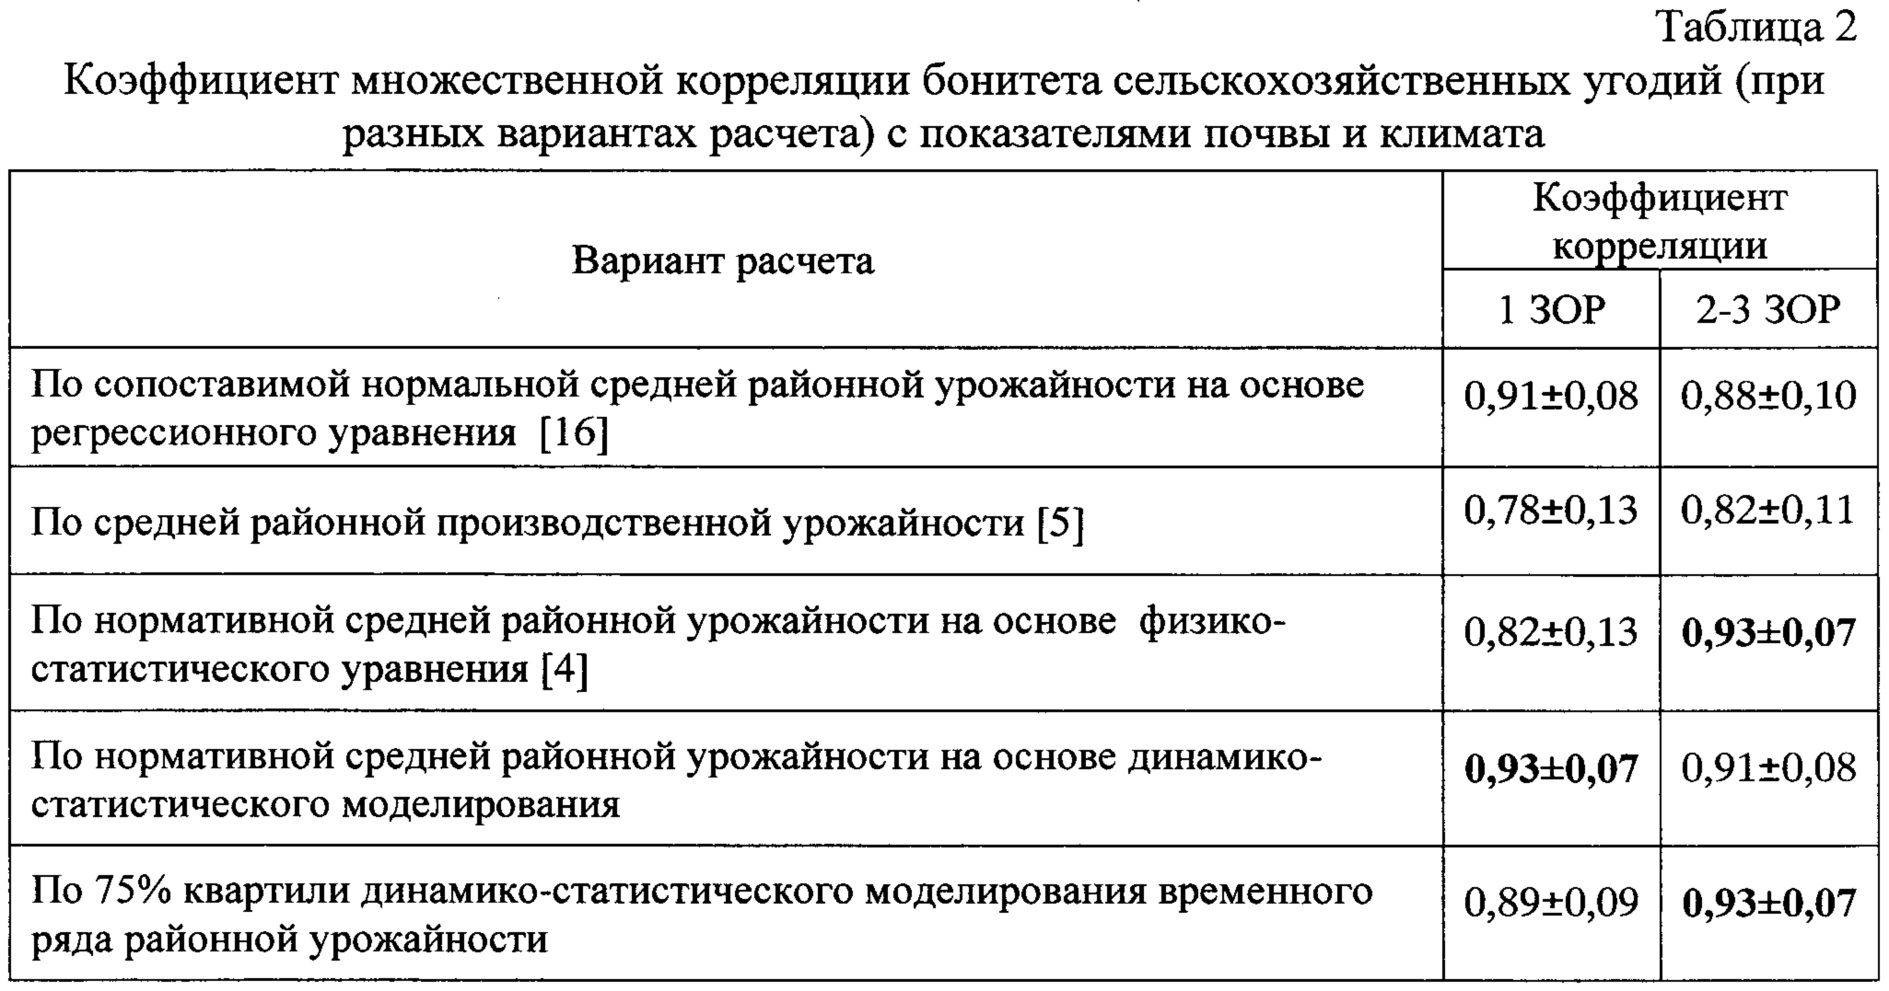 справочник агроклиматического оценочного зонирования субъектов российской федерации